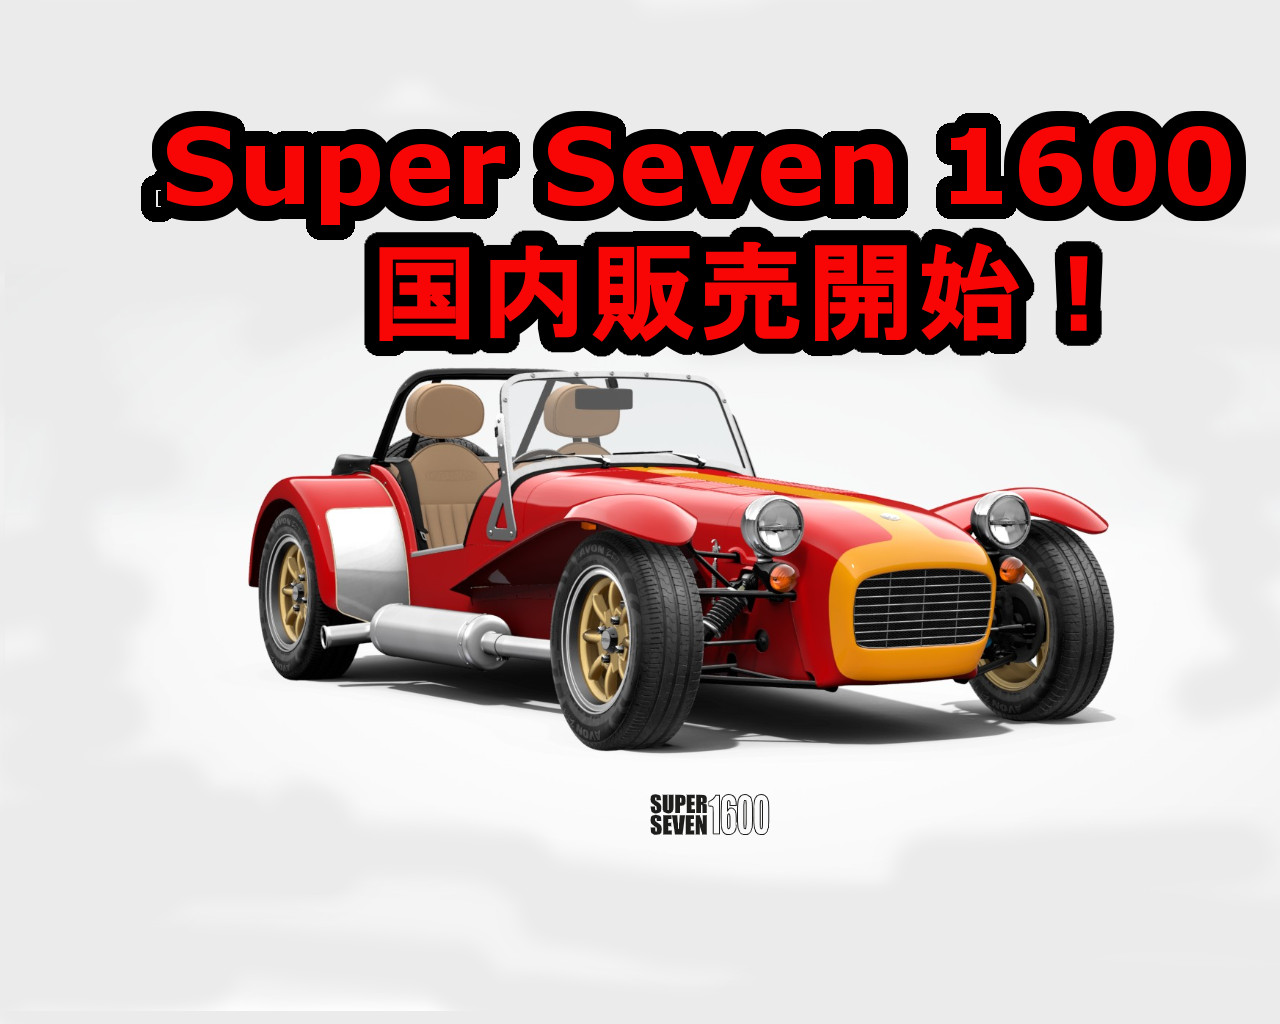 ケータハム New Super Seven 1600 スーパーセブン1600 発売開始です。 - ガレージシマヤ